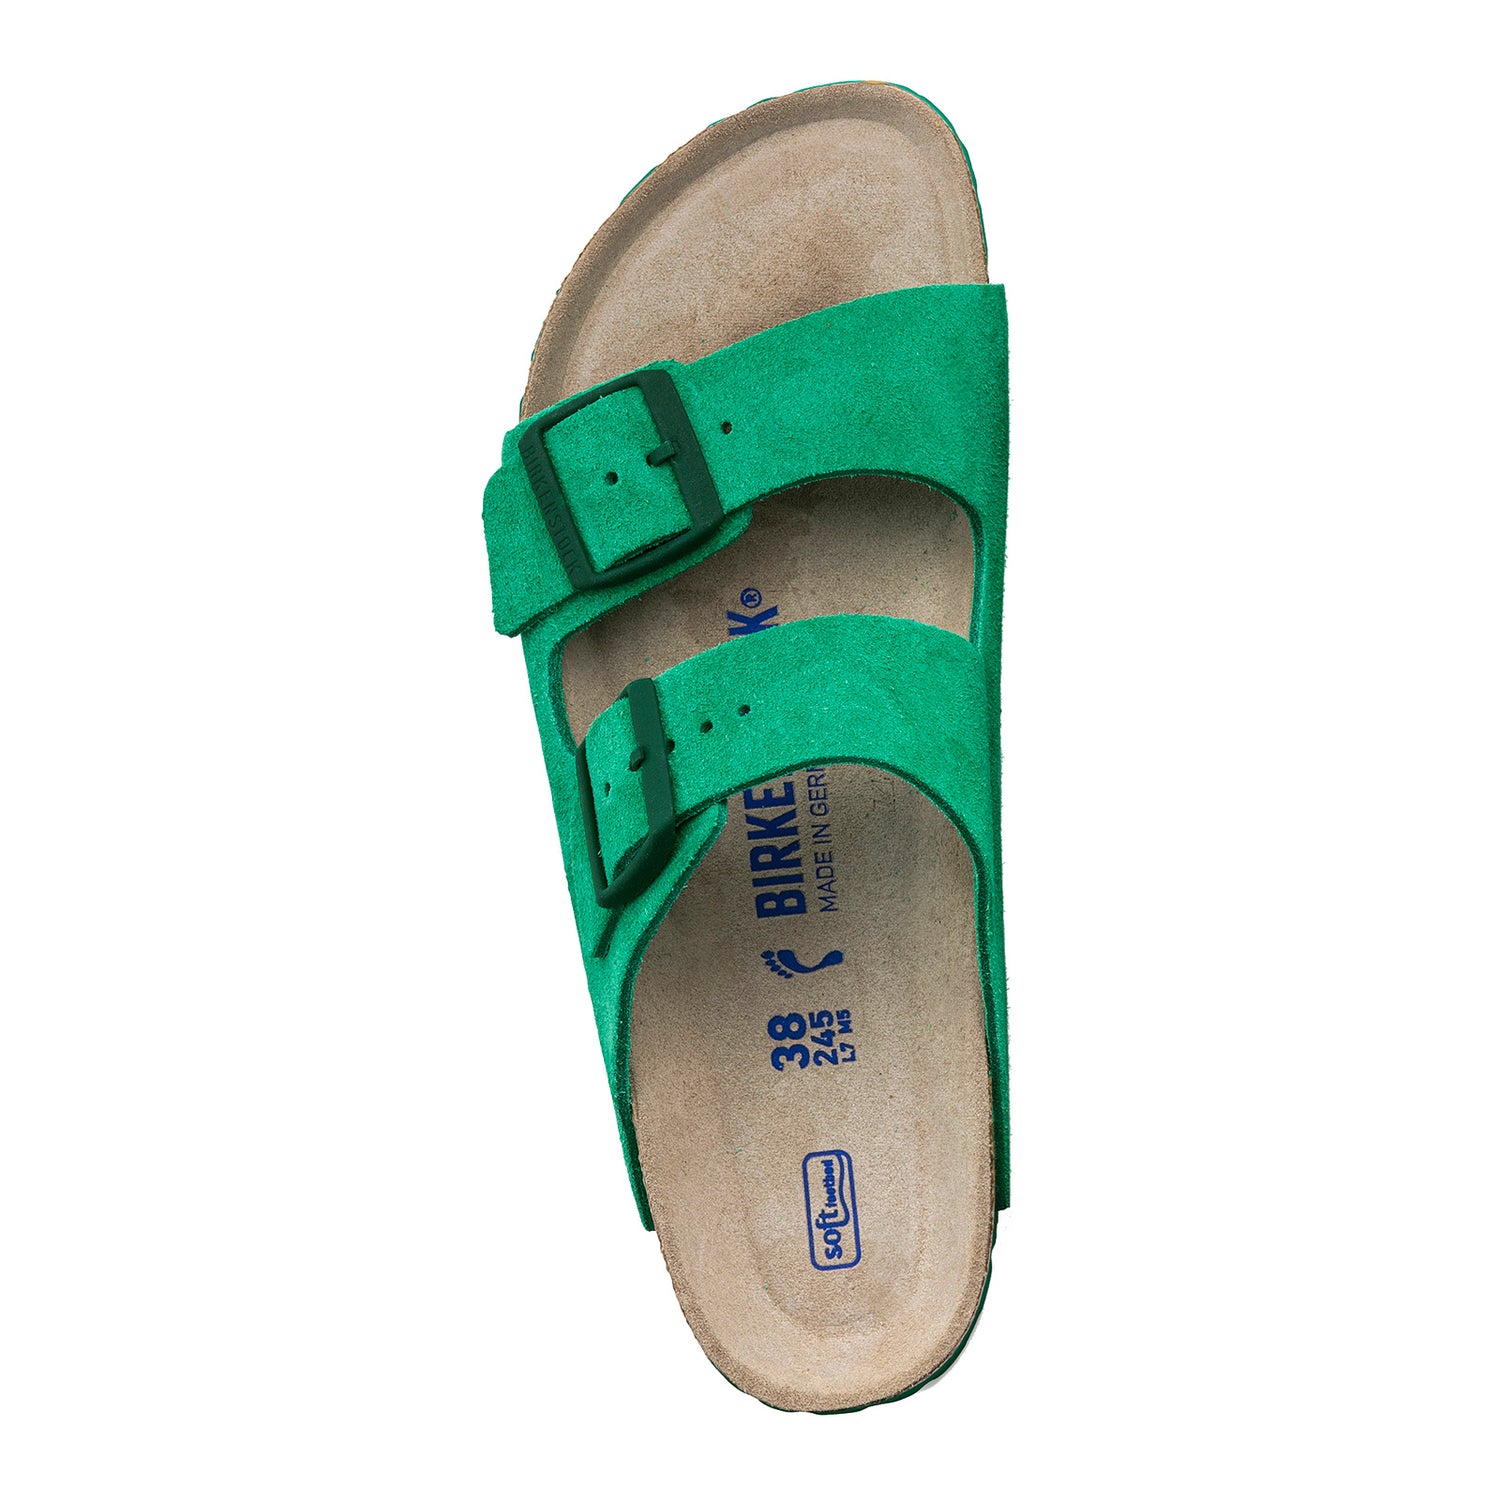 Peltz Shoes  Women's Birkenstock Arizona Soft Footbed Sandal - Narrow Width BOLD GREEN 1022 372 N